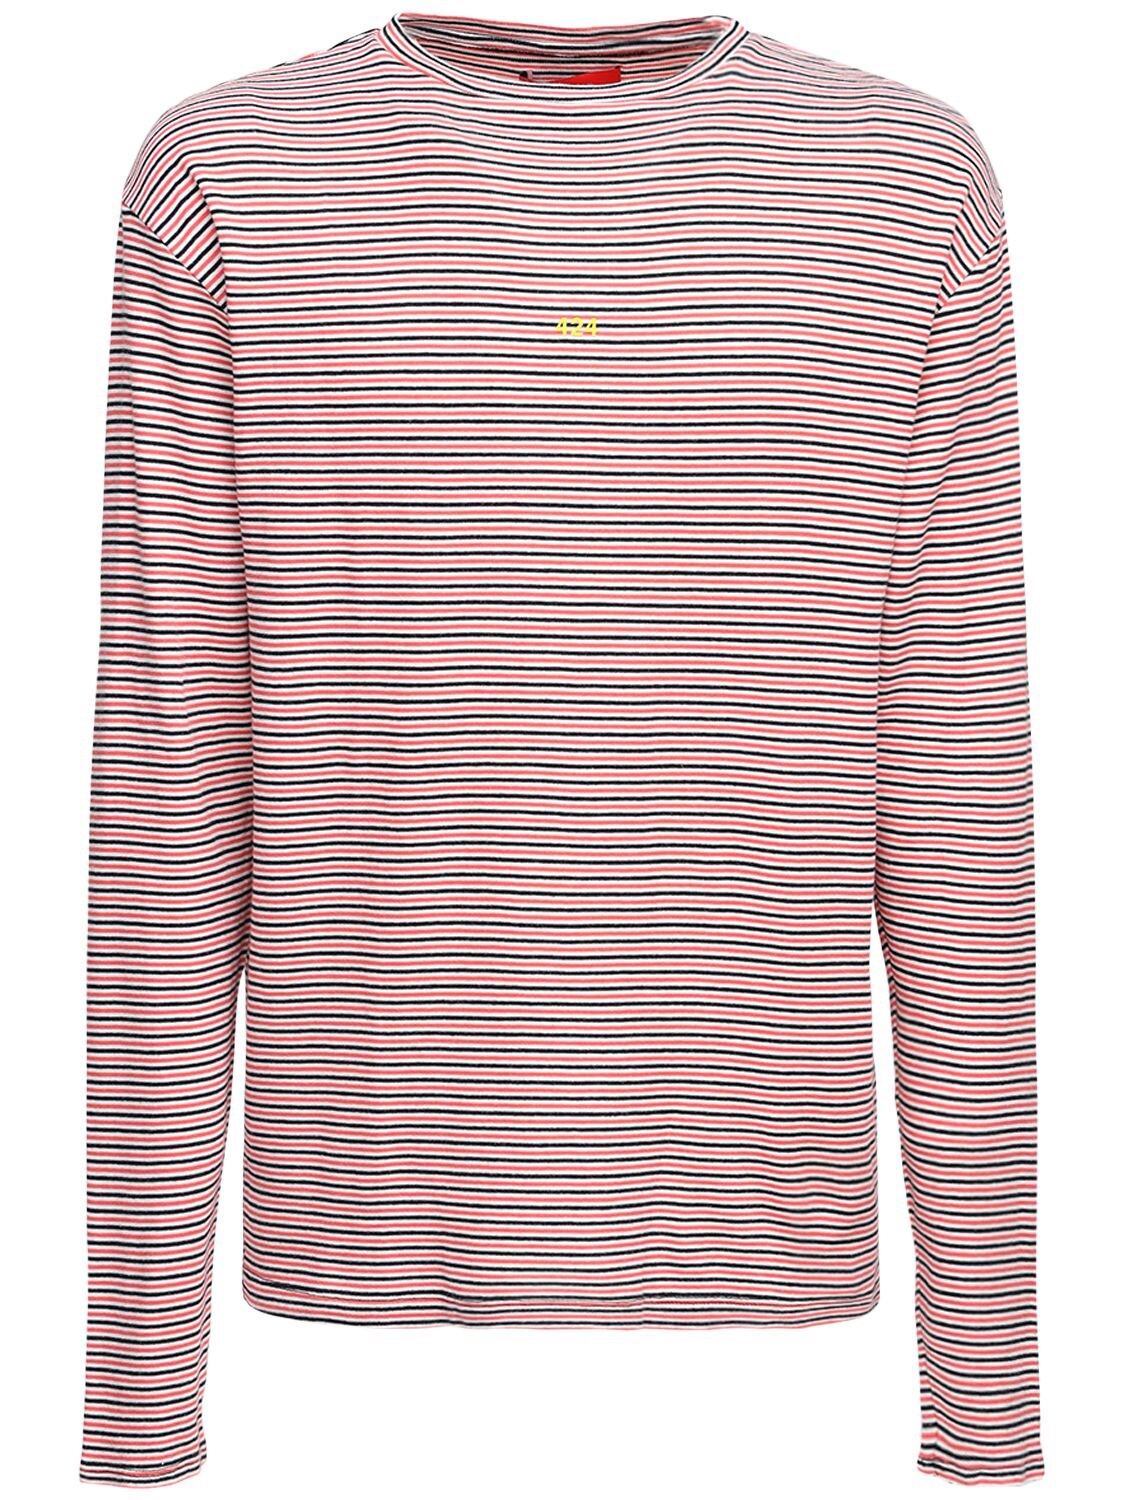 Striped Knit Cotton T-shirt